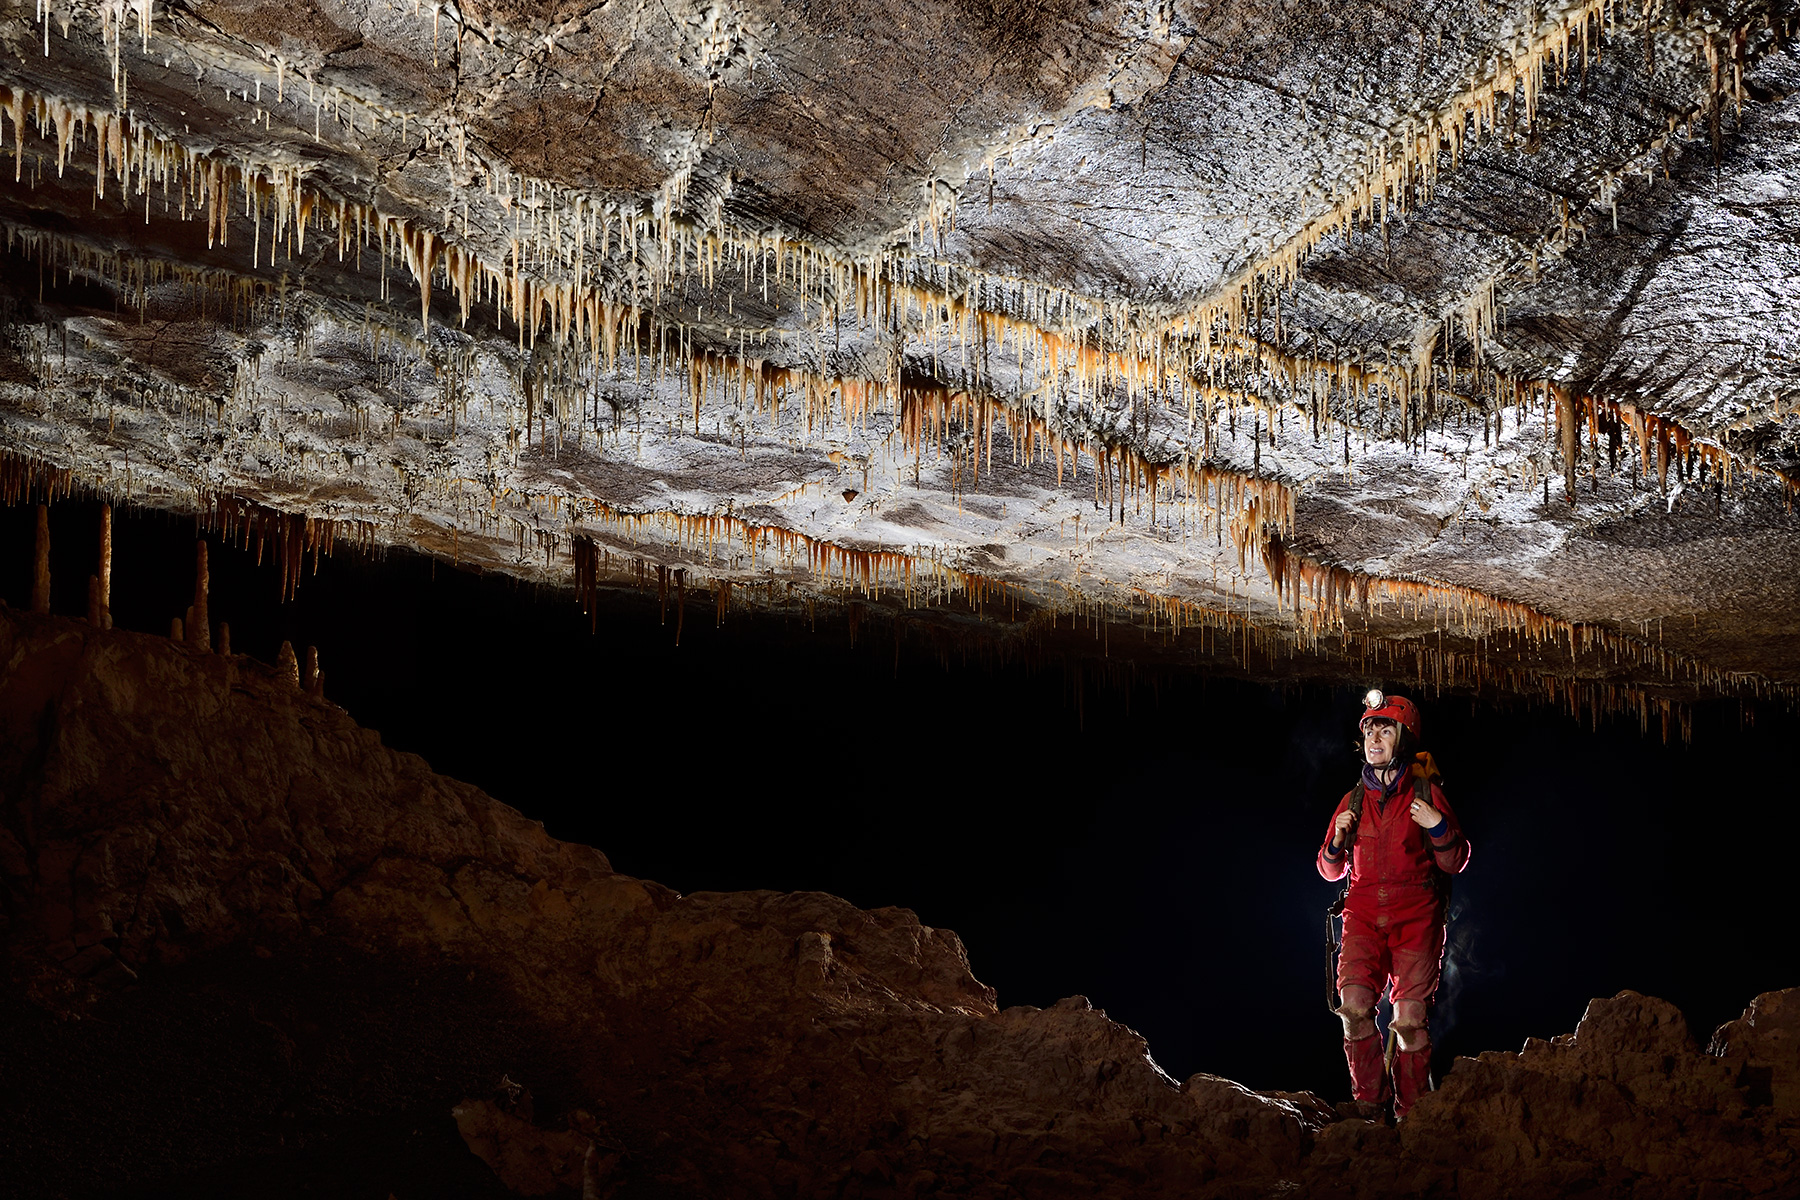 Grotte de Han-sur-Lesse, réseau sud (Belgique) -  Salle des Sinanthropes : plafond avec des fines stalactites alignées sur la fracturation.